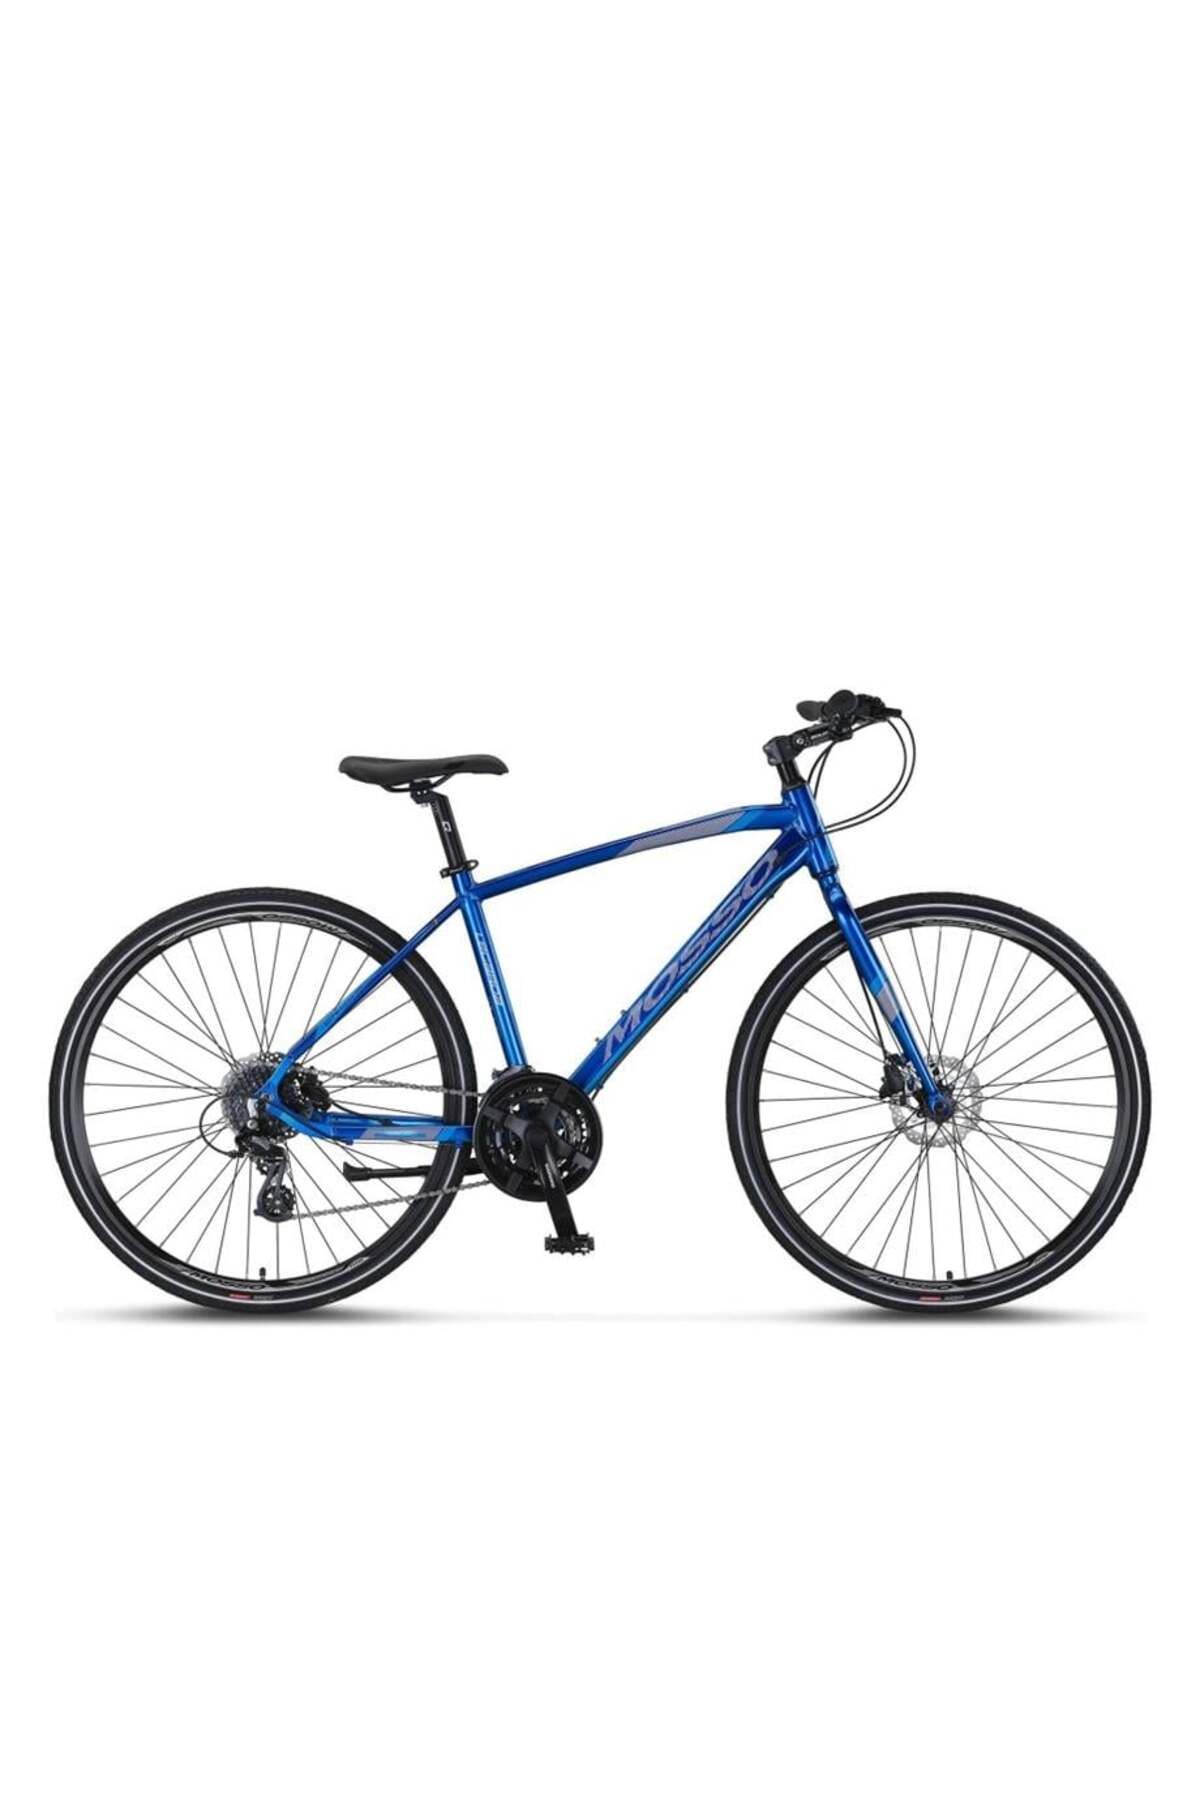 Mosso Legarda-2324-mdm-h Erkek Şehir Bisikleti 510h Hd 28 Jant 24 Vites Lacivert Mavi